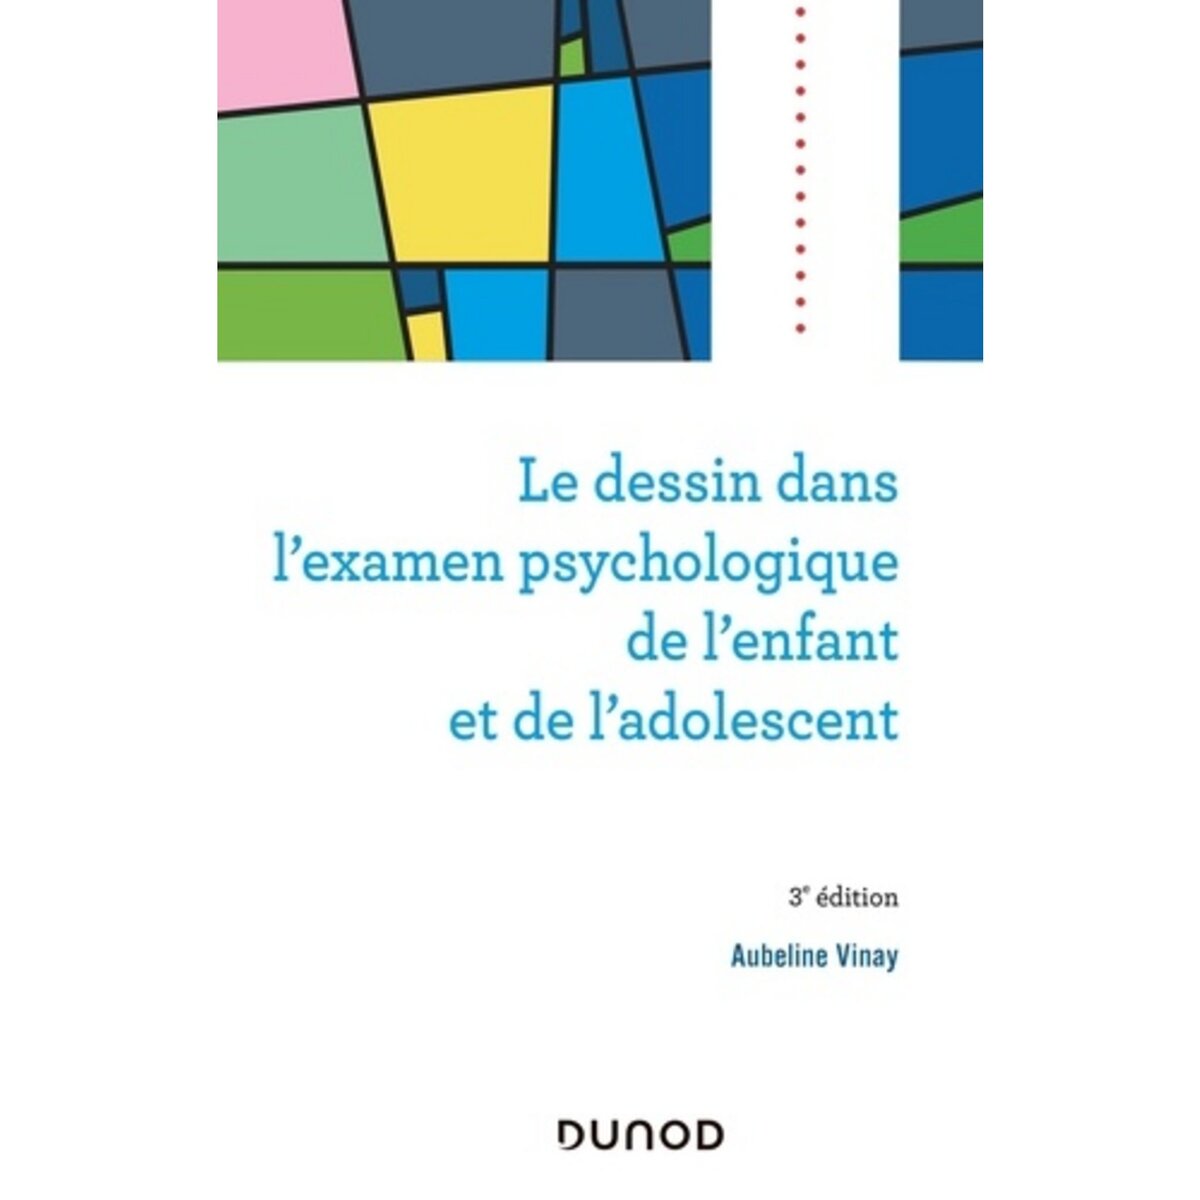  LE DESSIN DANS L'EXAMEN PSYCHOLOGIQUE DE L'ENFANT ET DE L'ADOLESCENT. 3E EDITION, Vinay Aubeline